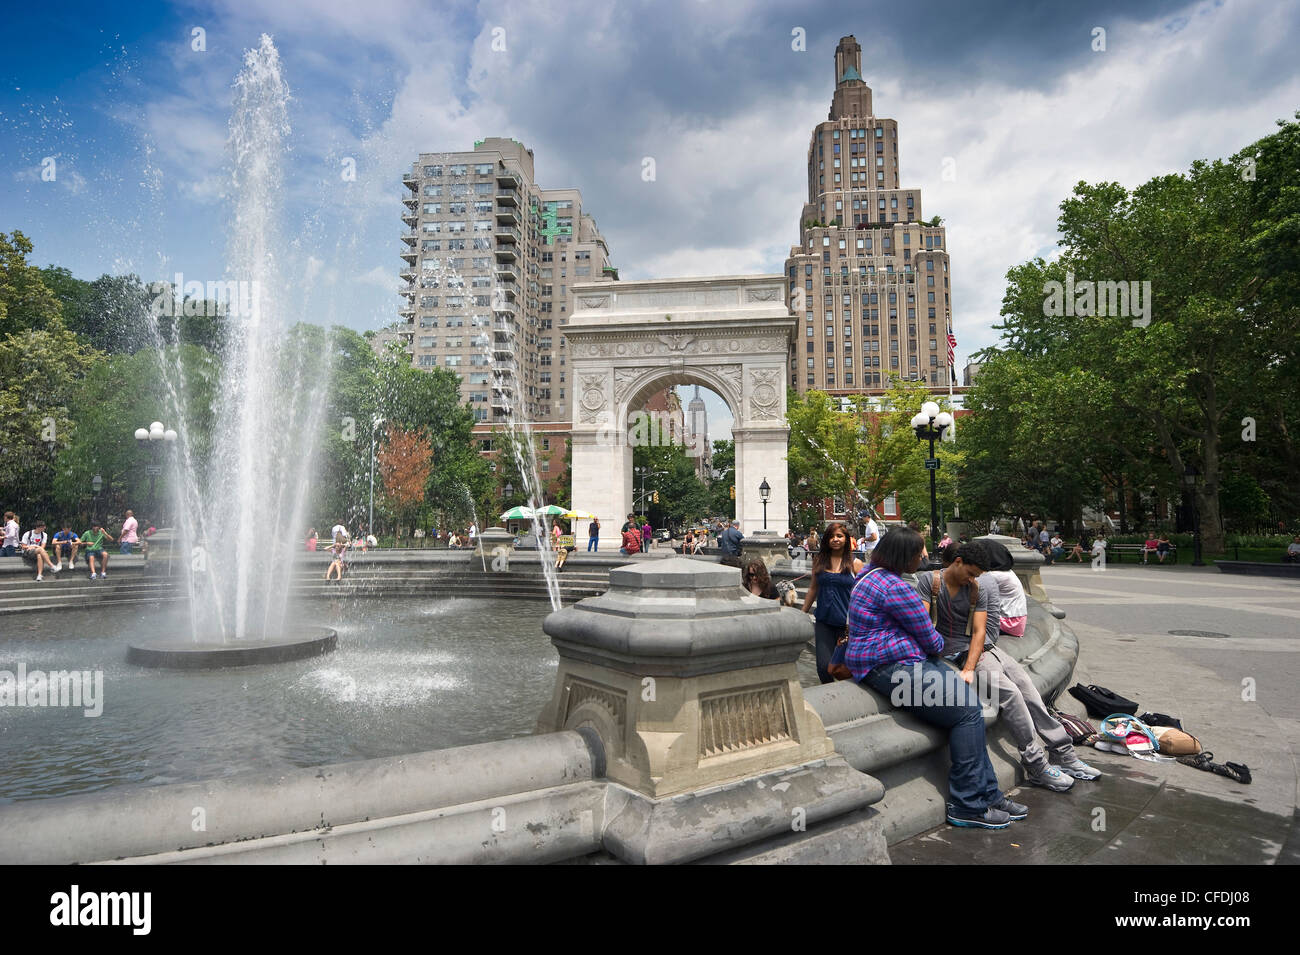 Fontaine centrale avec Washington Square Arch en arrière-plan, Washington Square Park, Manhattan, New York City, New York, USA Banque D'Images